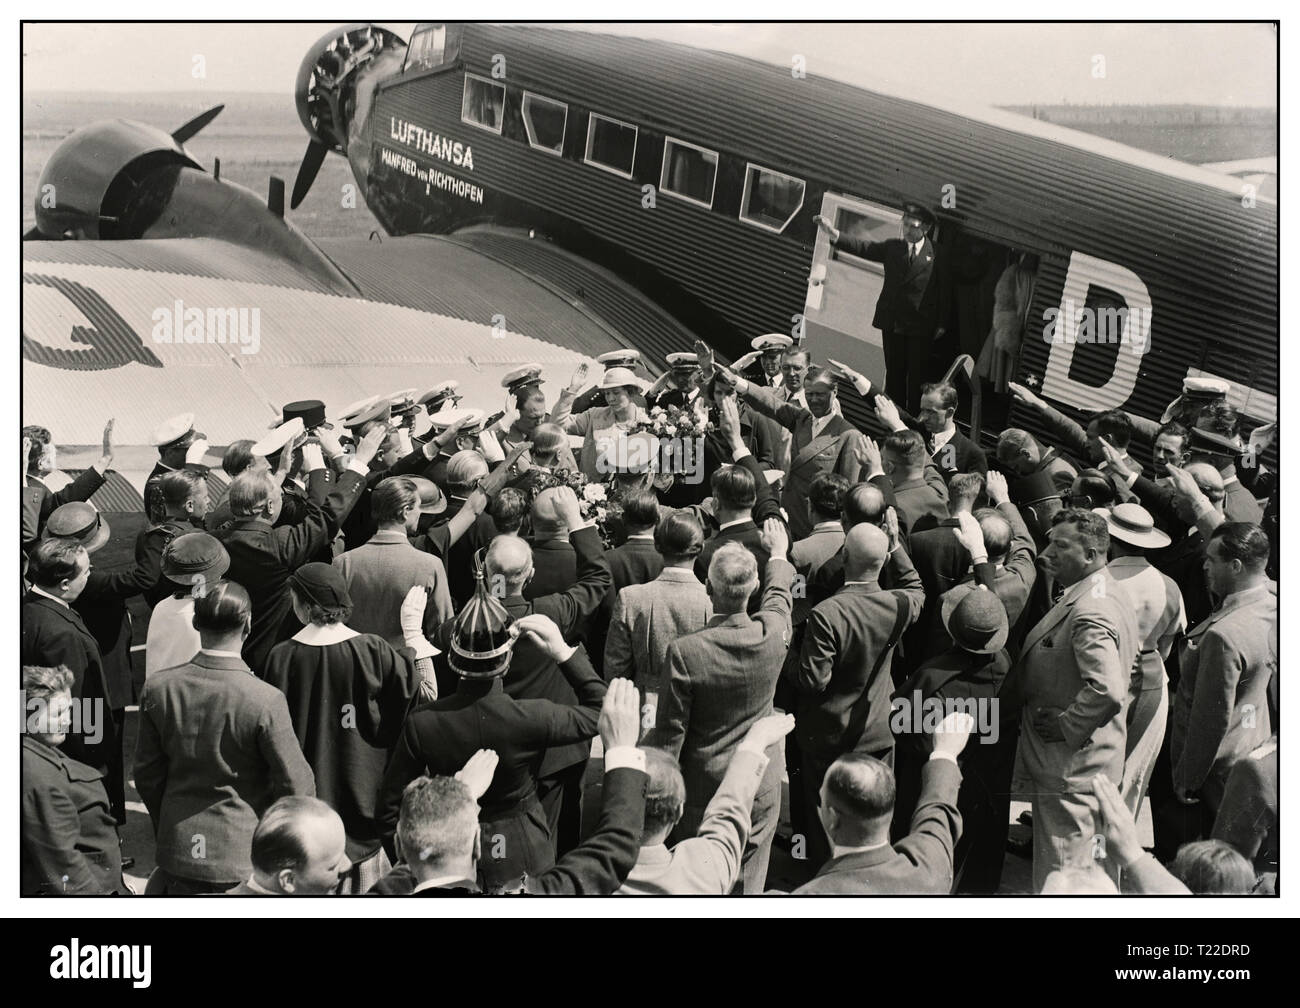 Jahrgang 1930 vor dem Krieg B&W Bild von Hermann Göring führende deutsche Nazis und Leiter der deutschen Luftwaffe Ankunft in Ungarn bin átyásföldön" in einem deutschen Junkers Ju 52 mit "Lufthansa" Insignia am Rumpf Masse begrüße ihn mit Heil Hitler begrüßt 1935 Stockfoto